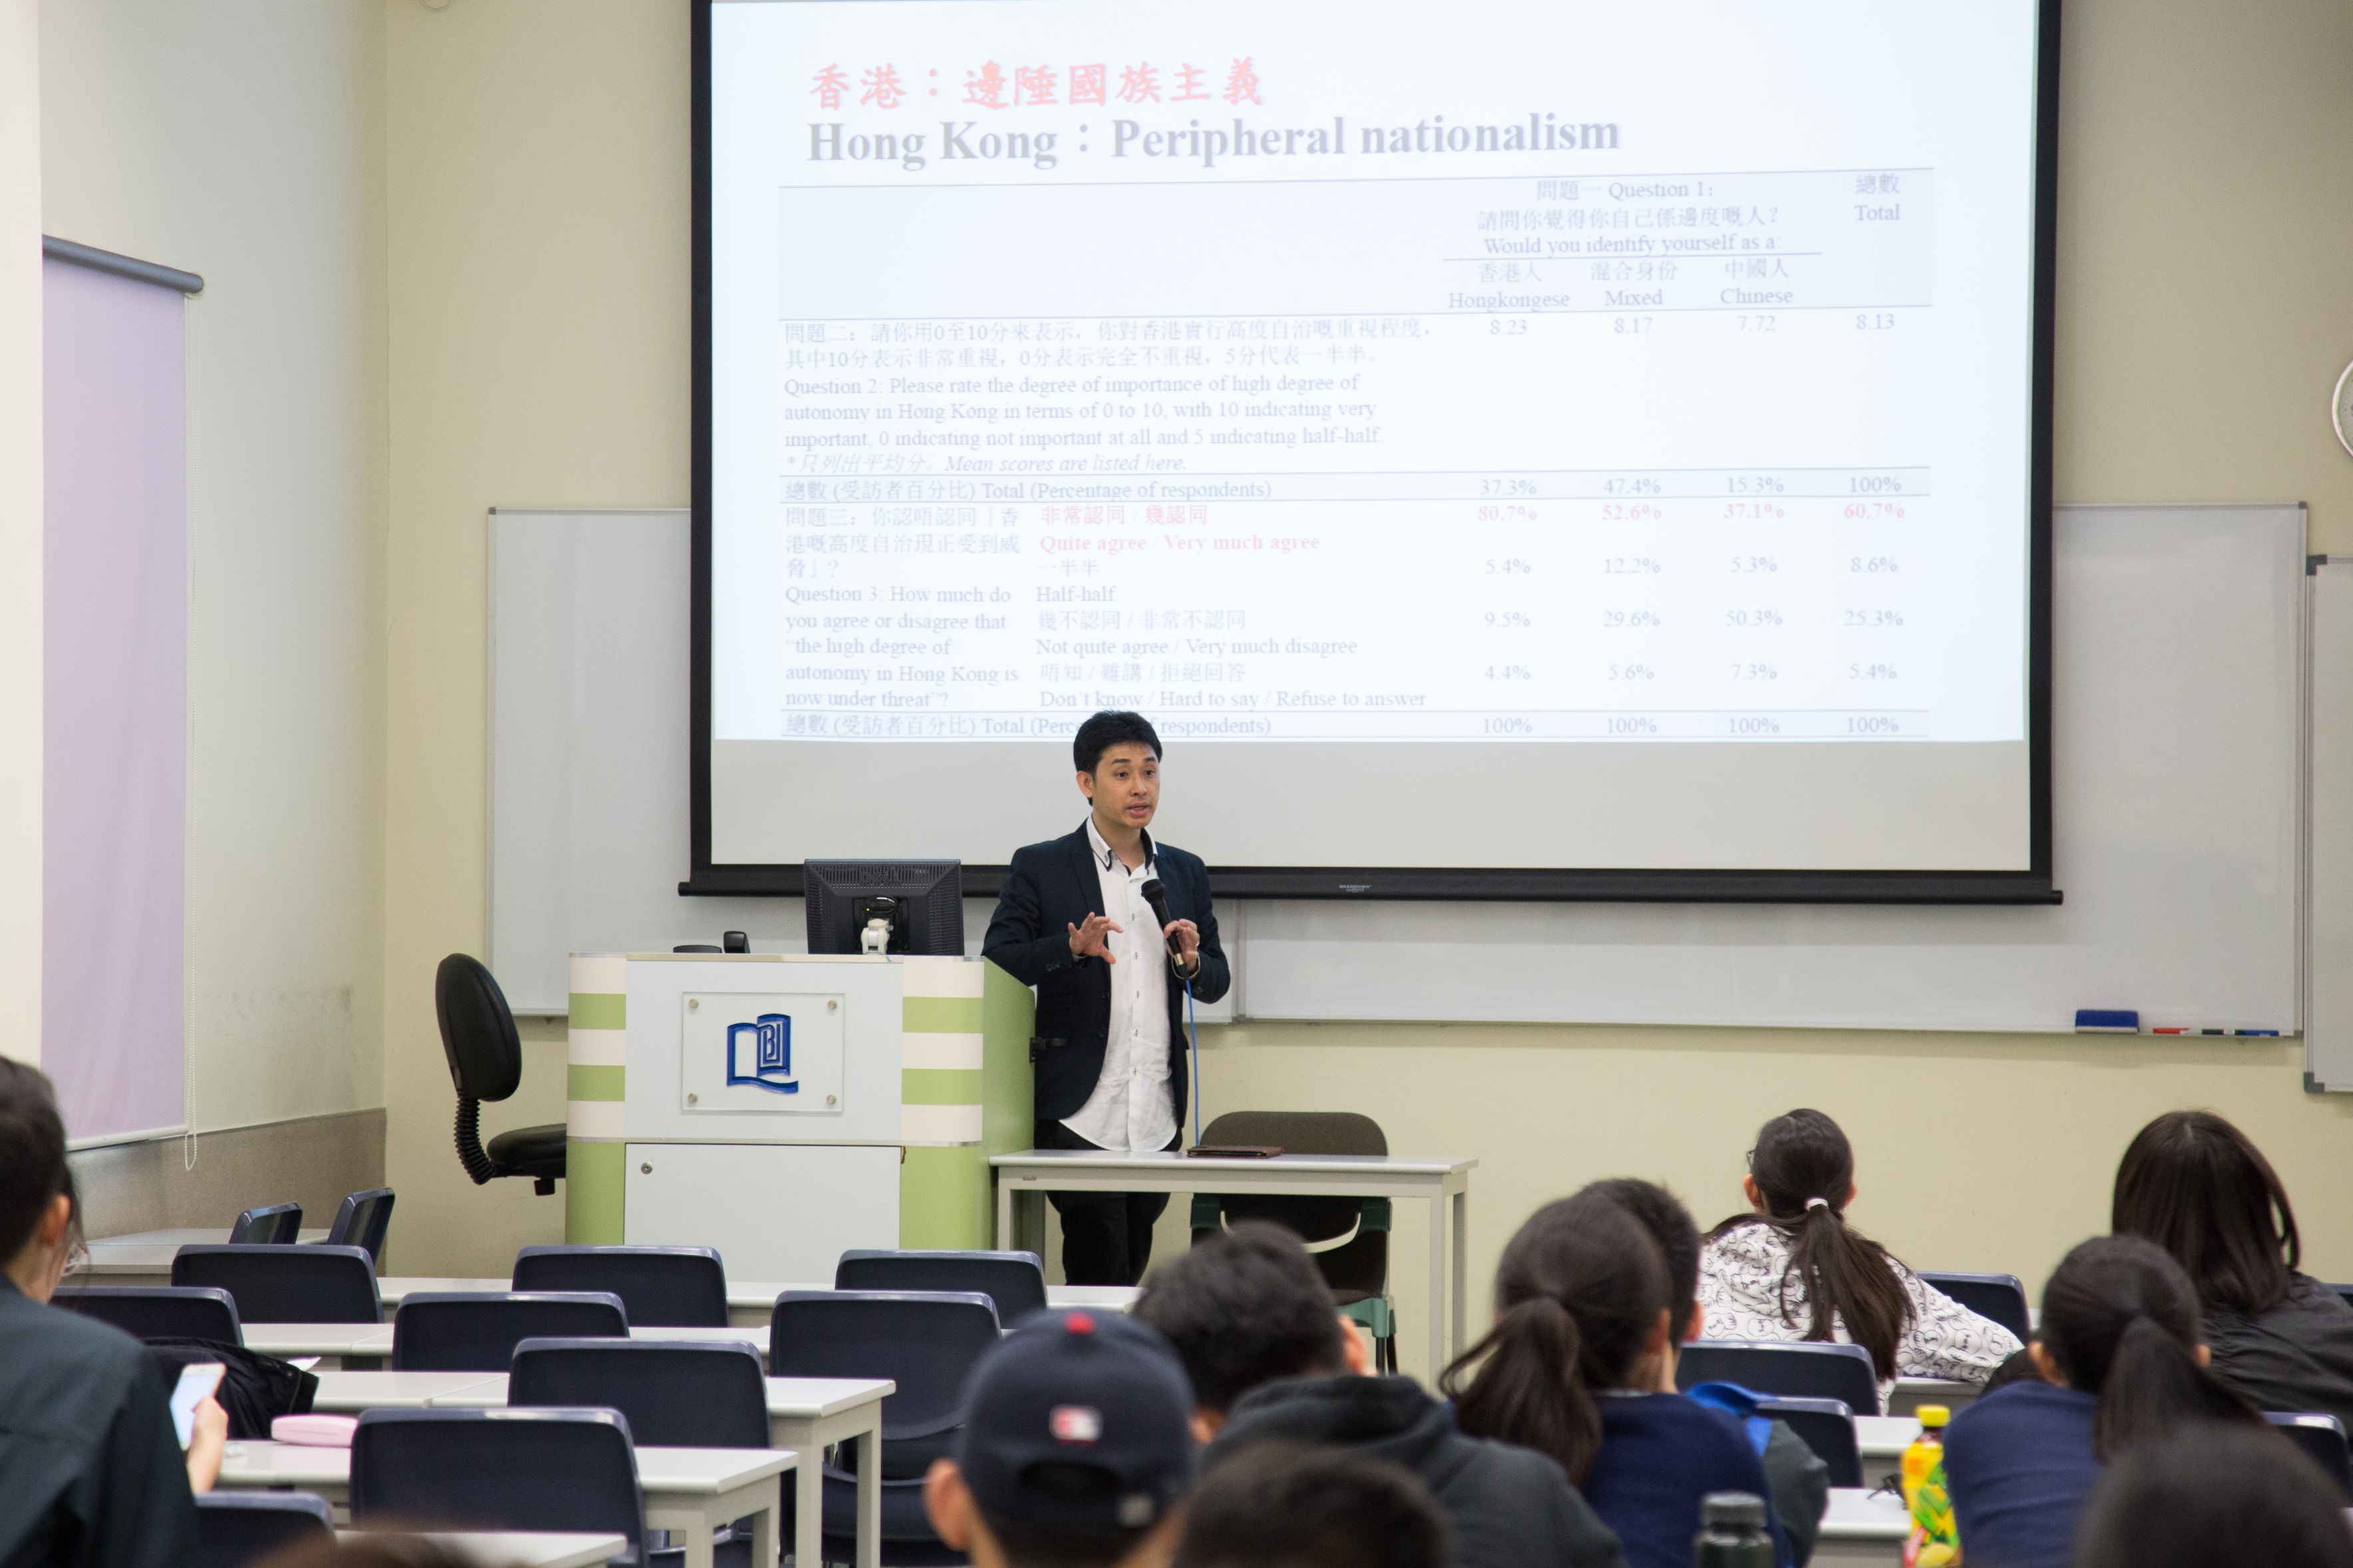 香港教育大學副教授暨香港研究學院副總監方志恒博士在「中國因素與香港前途」講座上分享他對於中港關係的過去與未來的看法。 